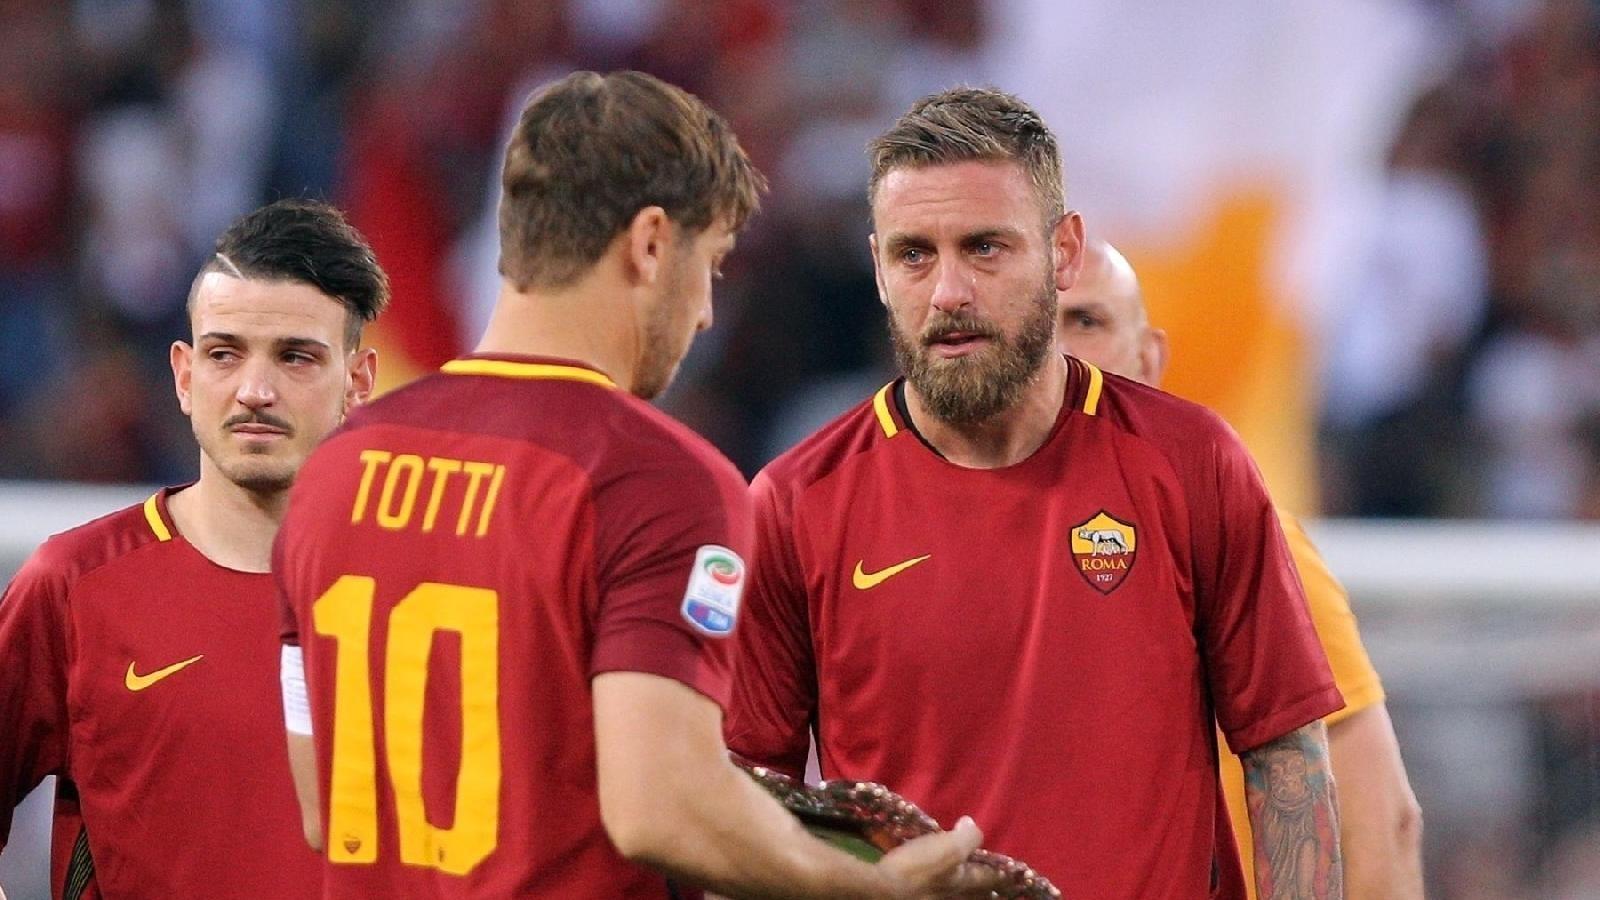 FOTO - La Roma ricorda l'addio di Francesco Totti su Twitter